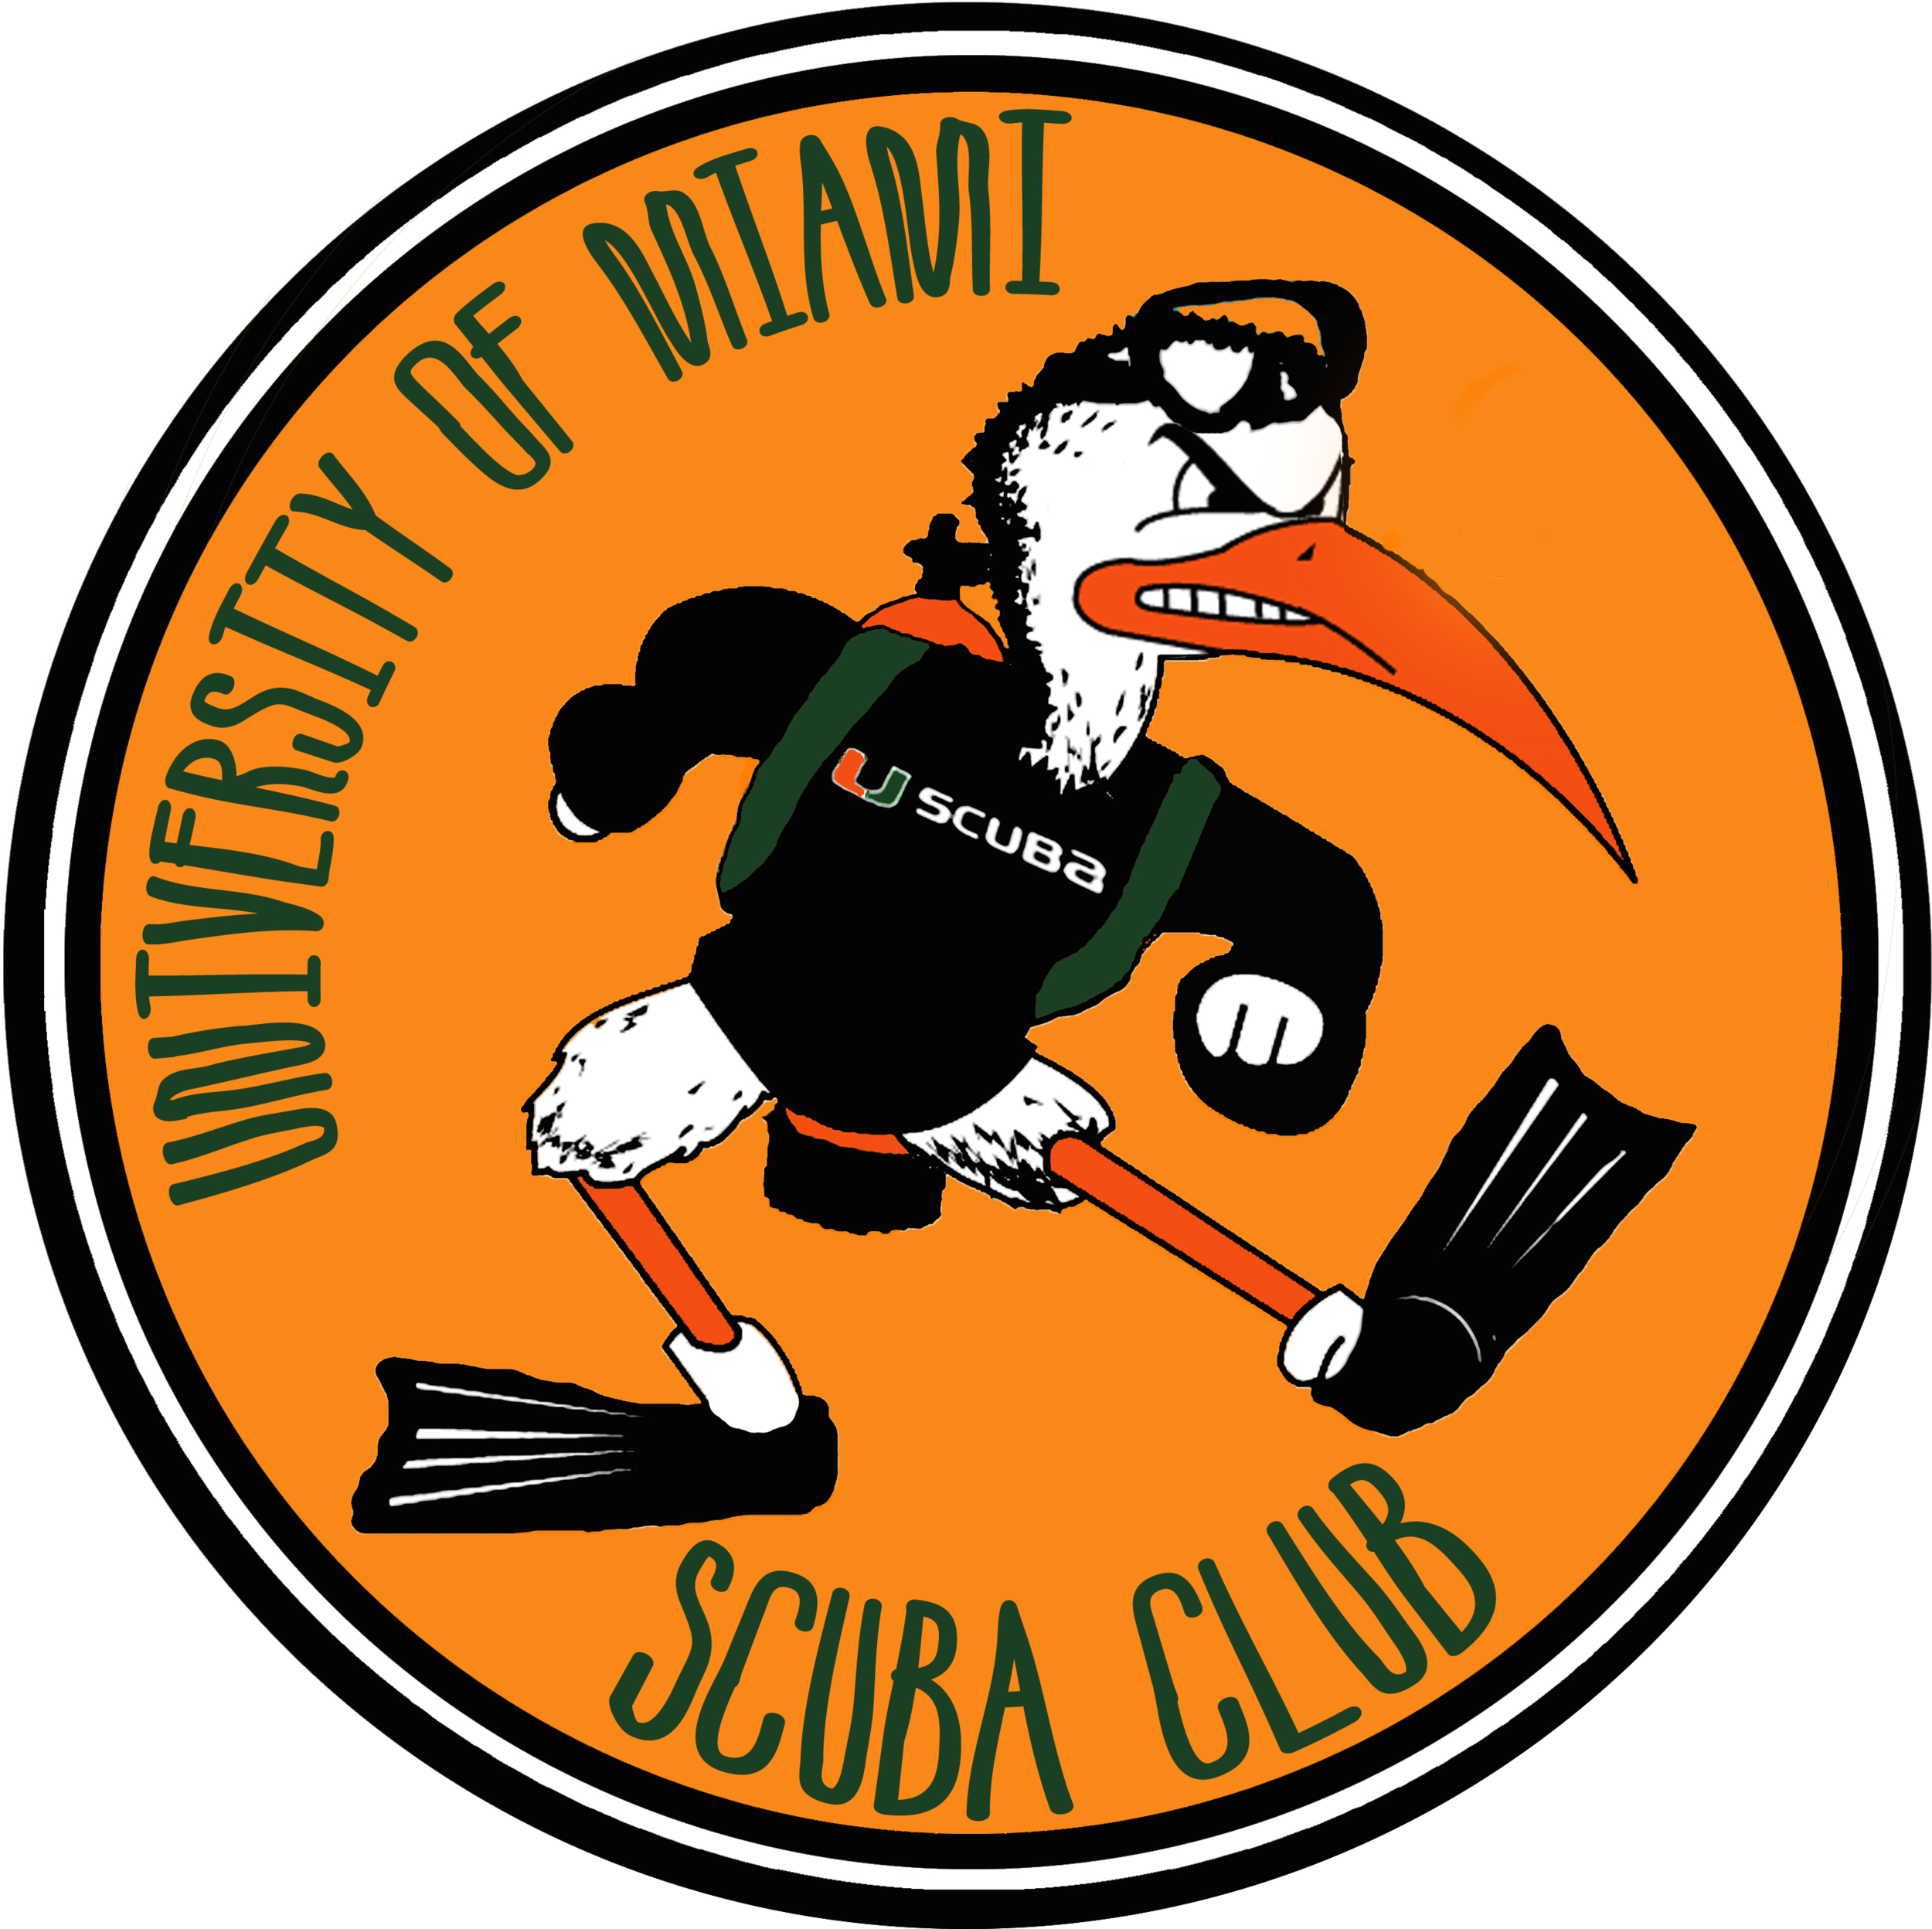 UM Scuba Club